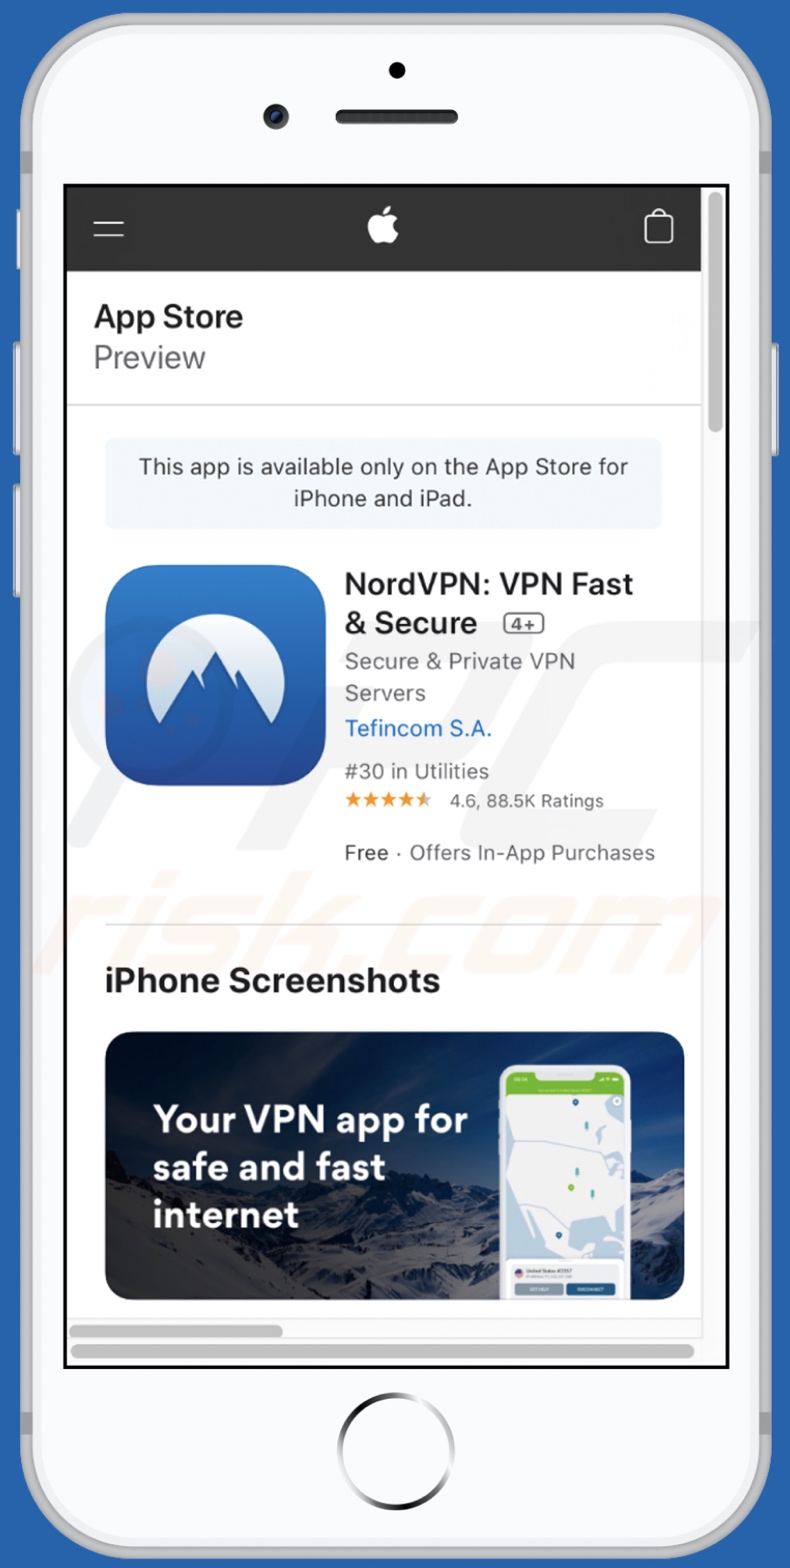 Aplikacja promowana przez komórkowy wariant oszustwa IOS VPN profile